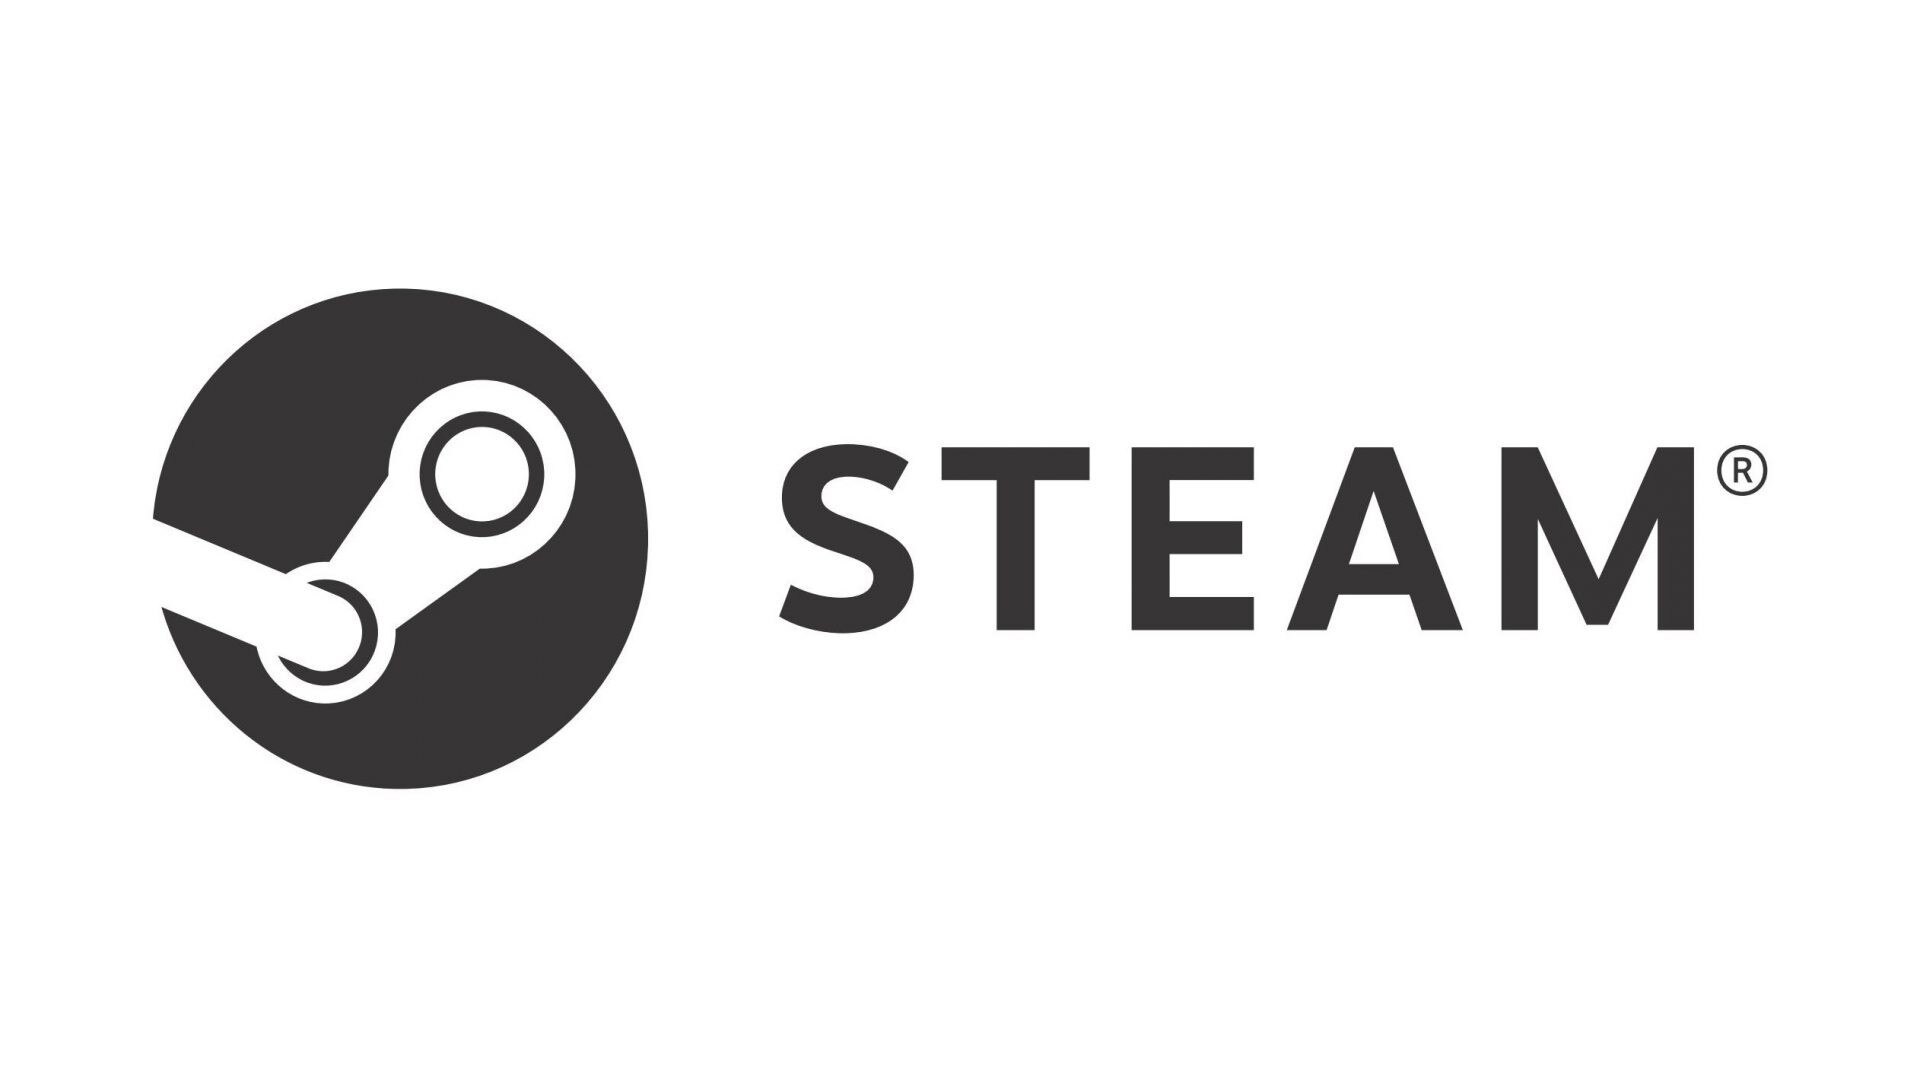 Steam Workshop::HackerPhone 1.0